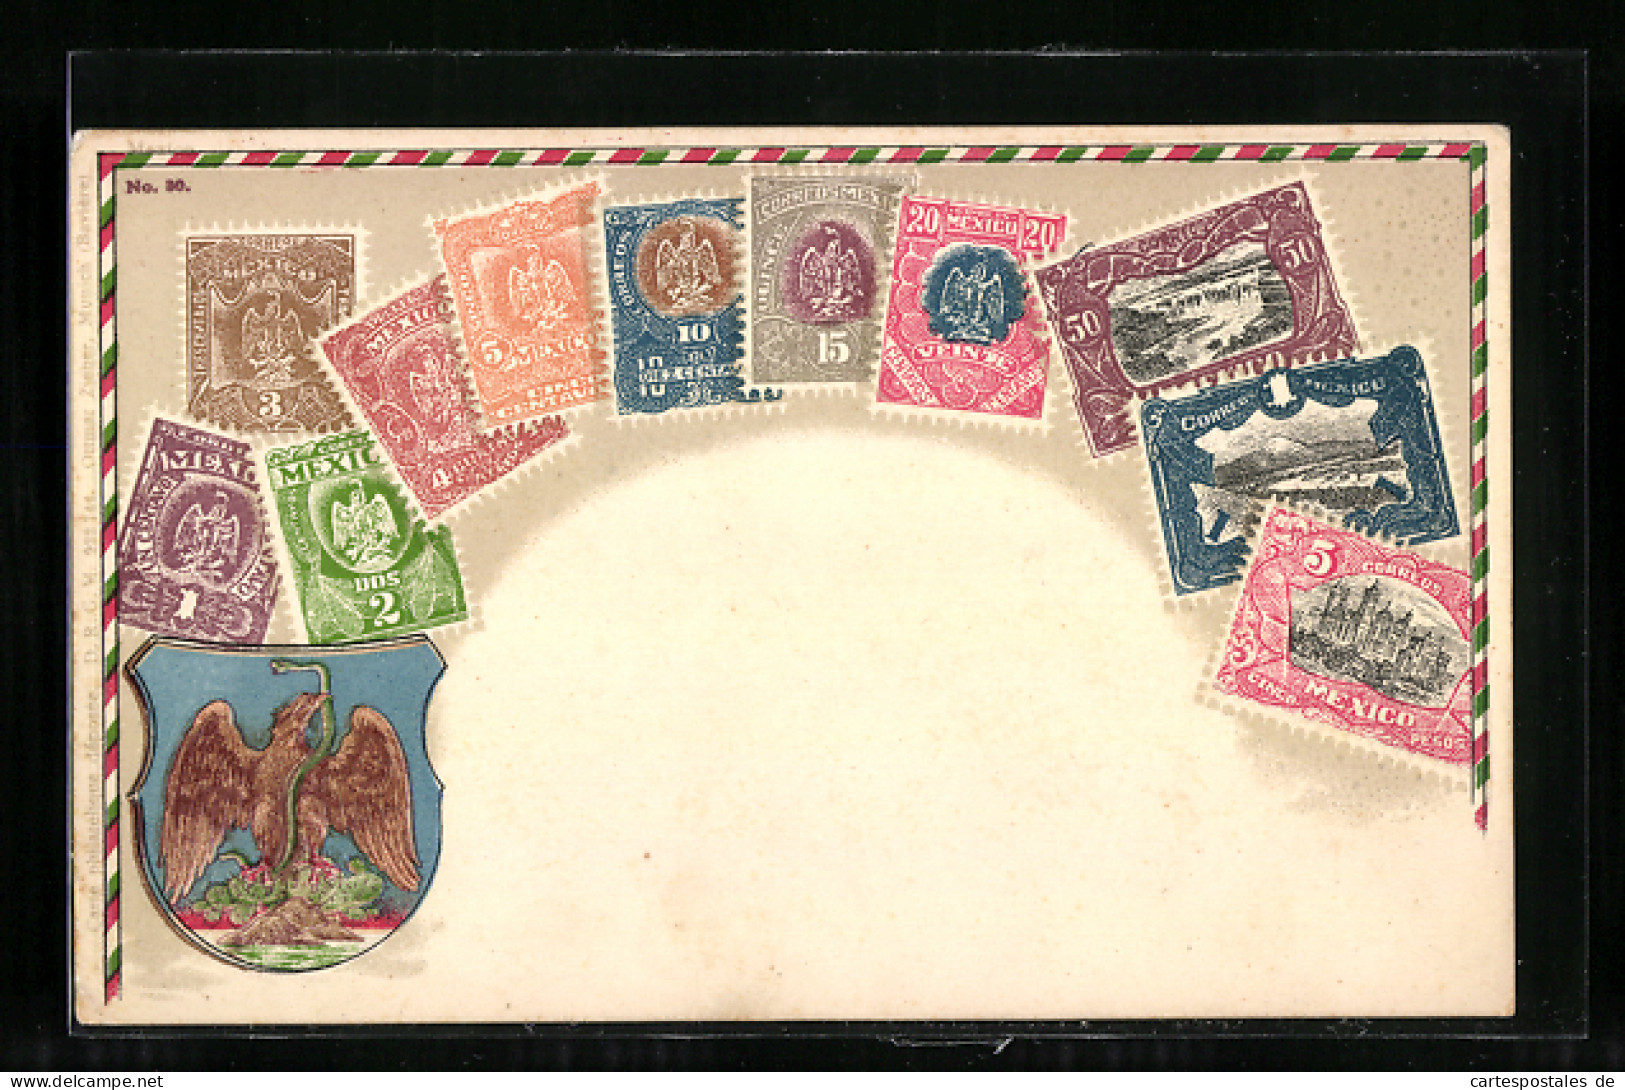 AK Briefmarken Aus Mexico Mit Wappen  - Timbres (représentations)